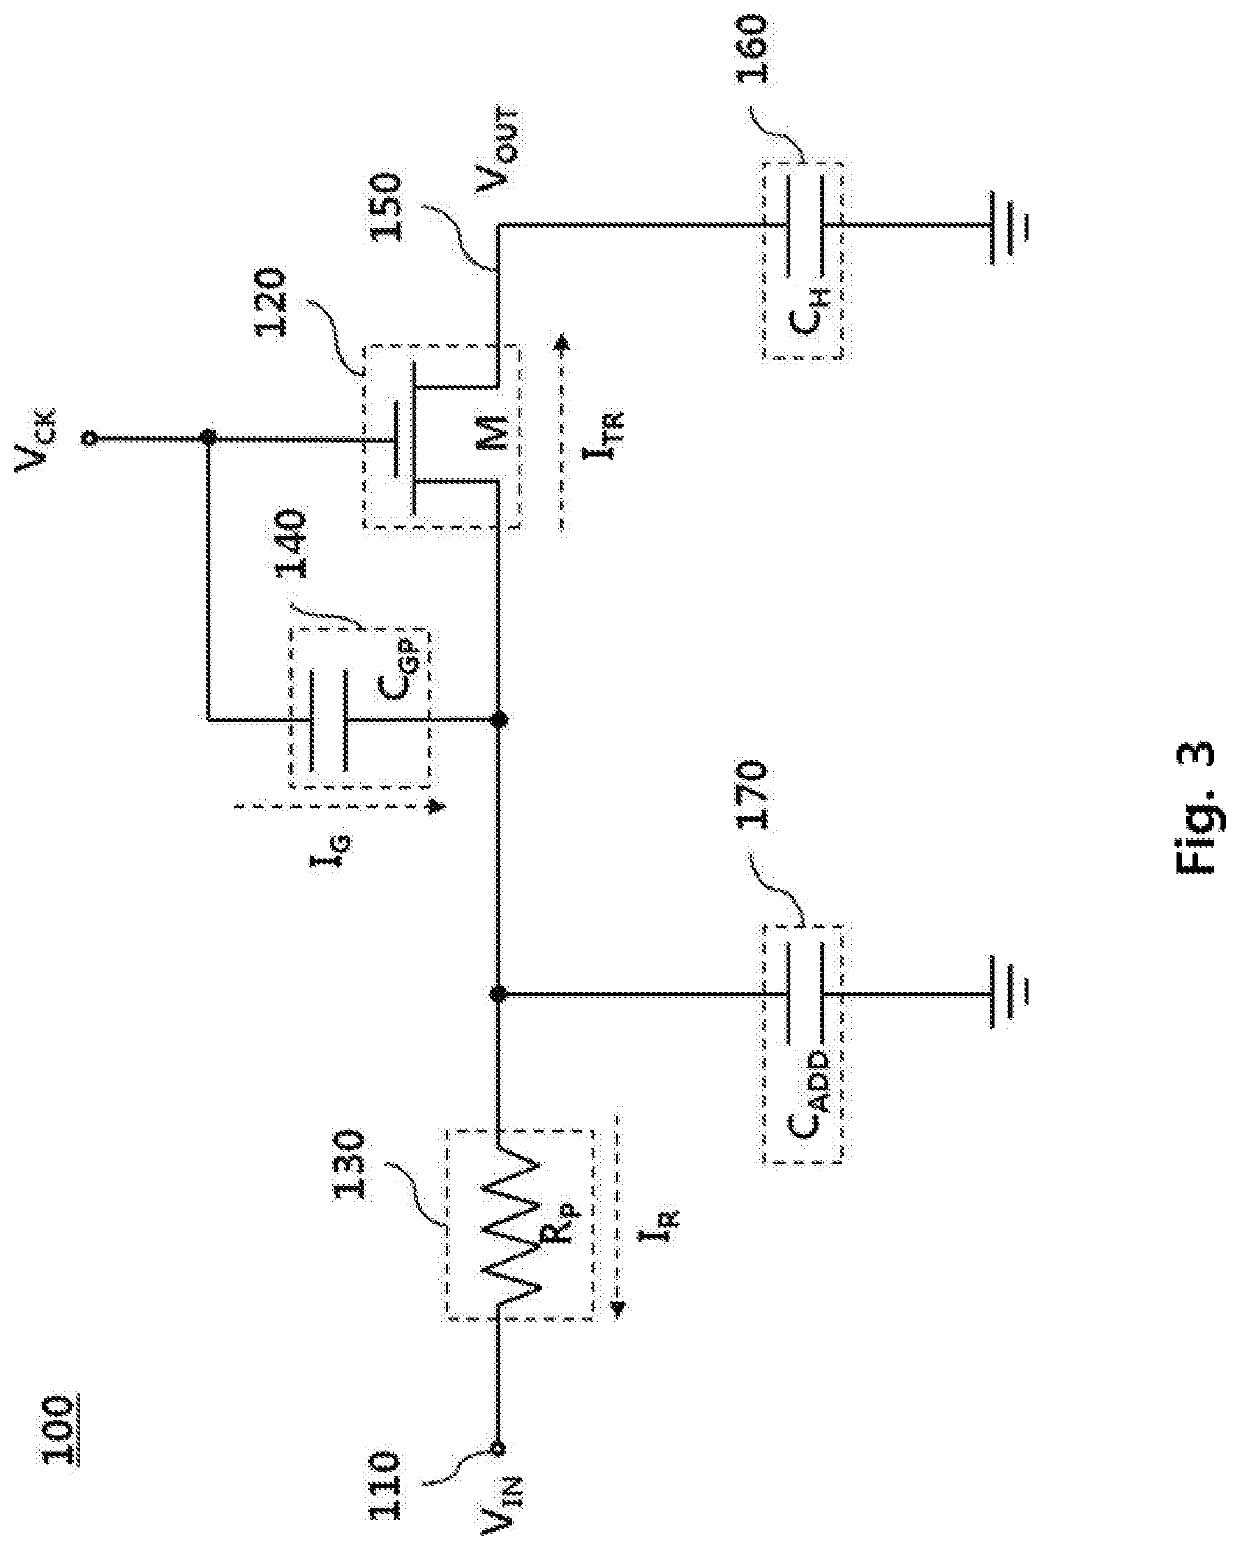 Transistor circuit and electronic circuit having same